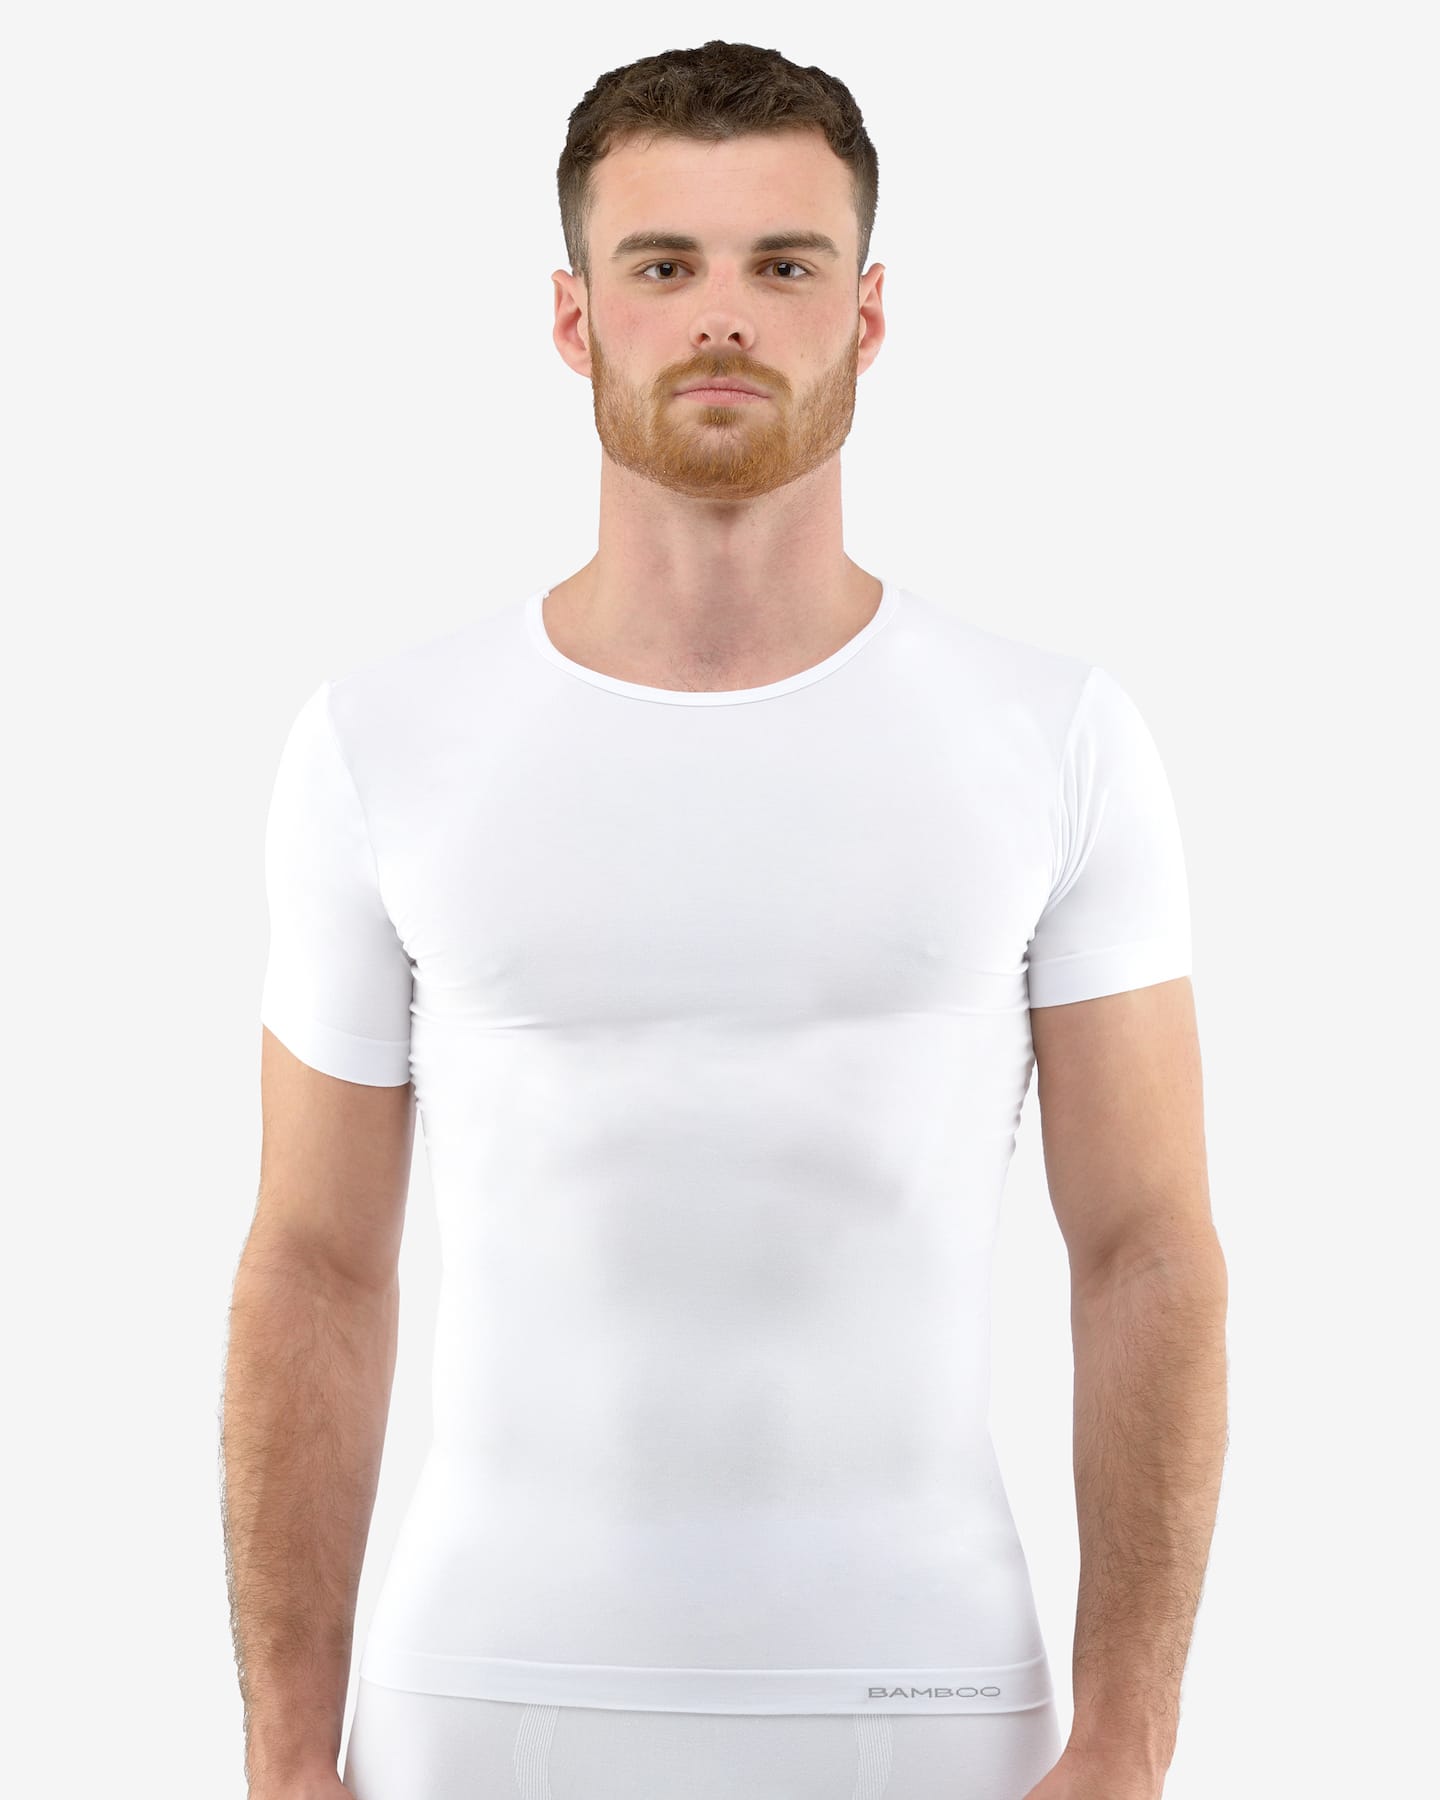 EcoBamboo triko s krátkým rukávem